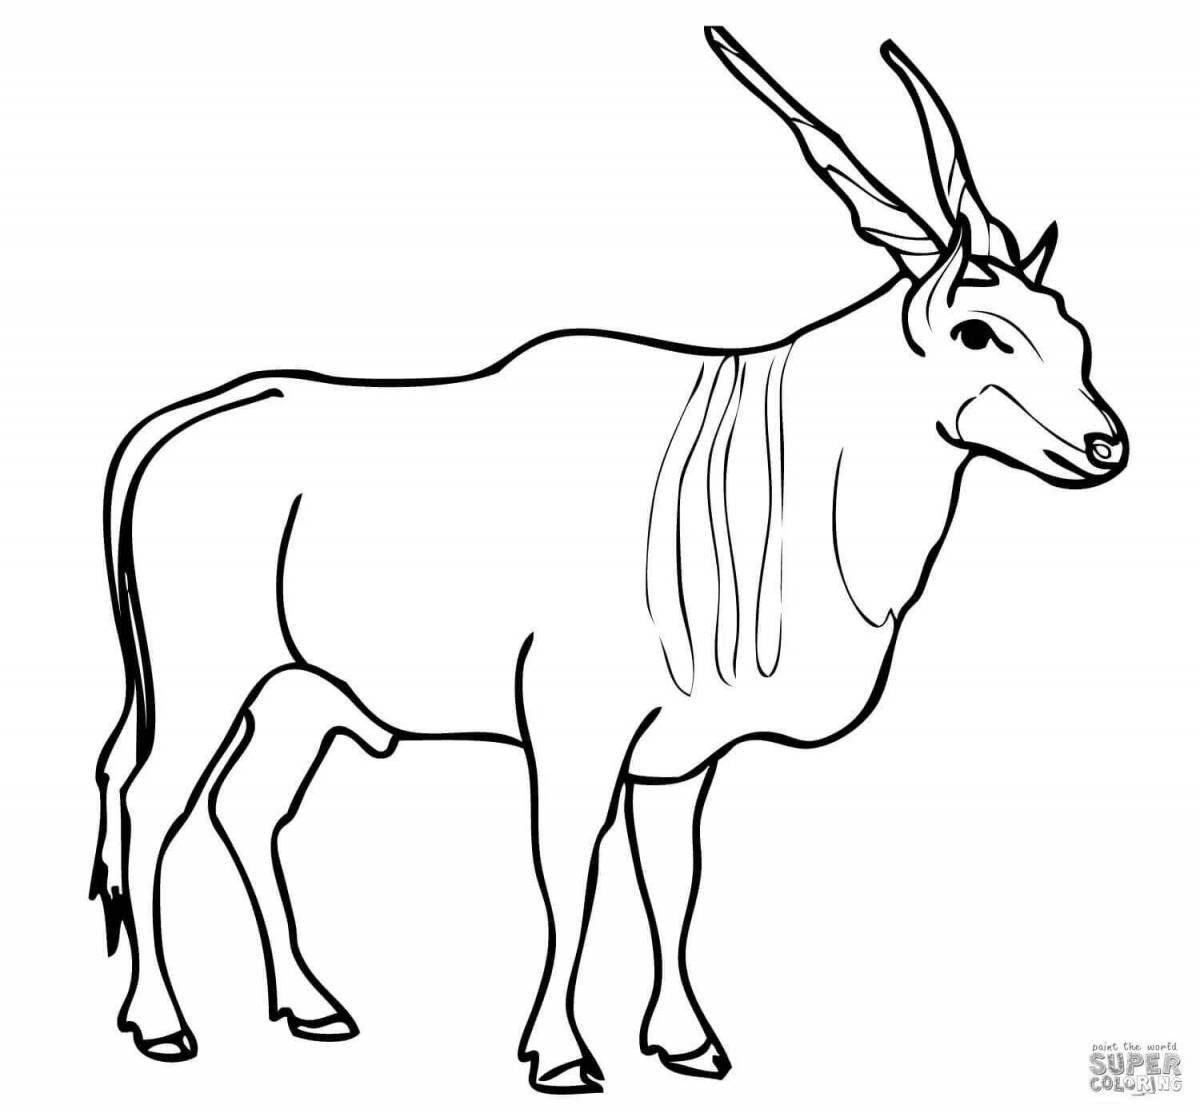 Увлекательная раскраска антилопы для детей